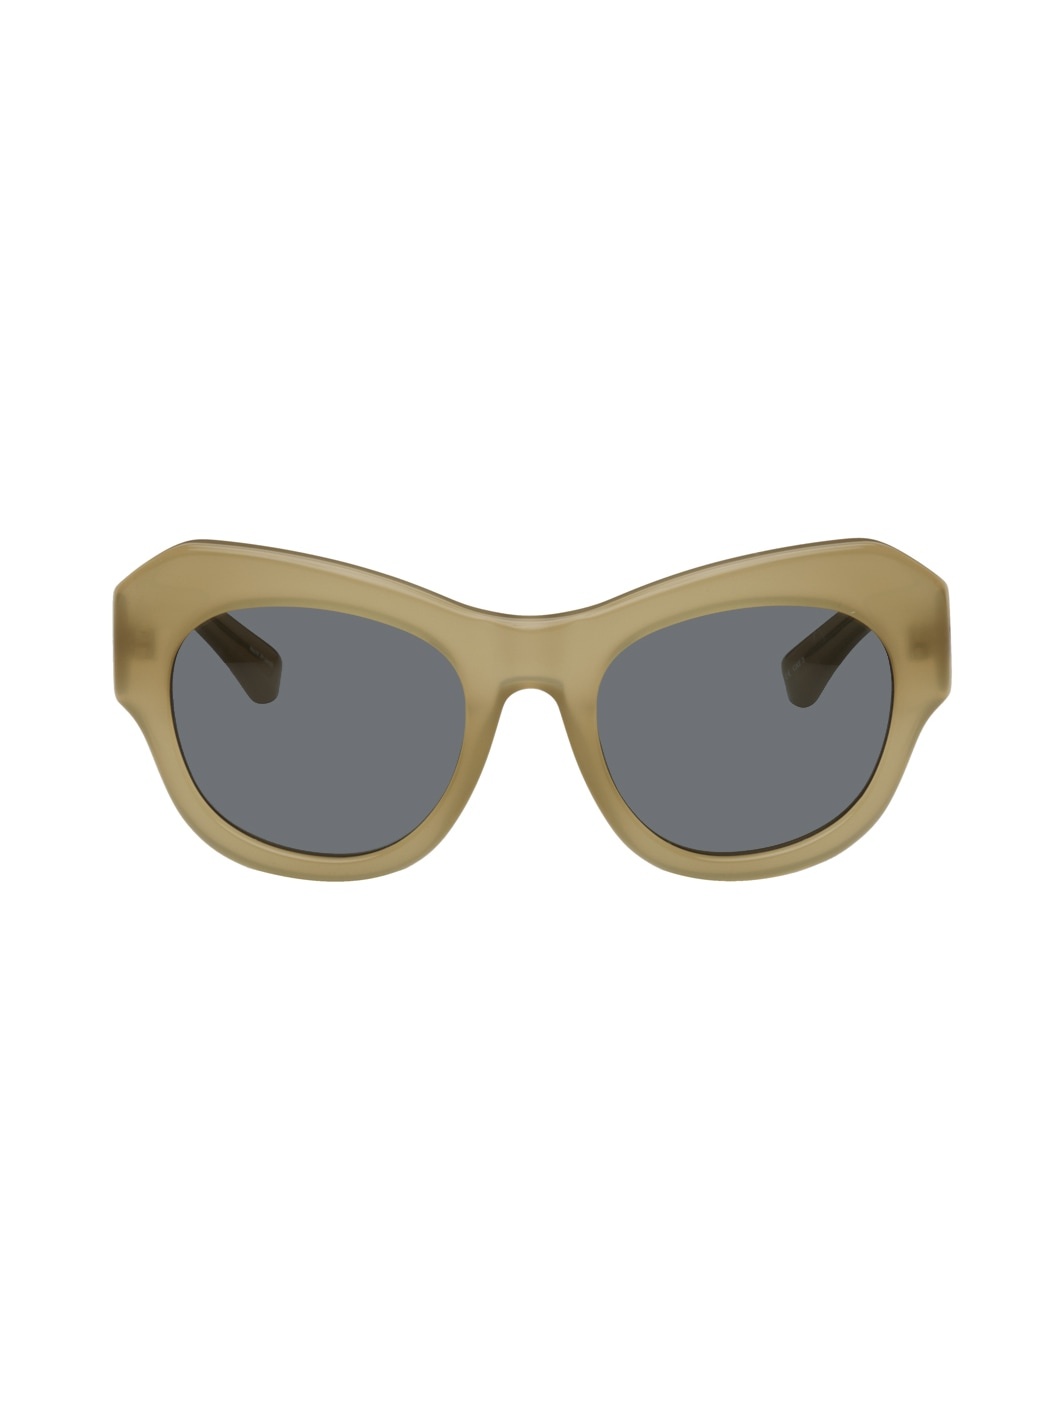 Tan Linda Farrow Edition Cat-Eye Sunglasses - 1